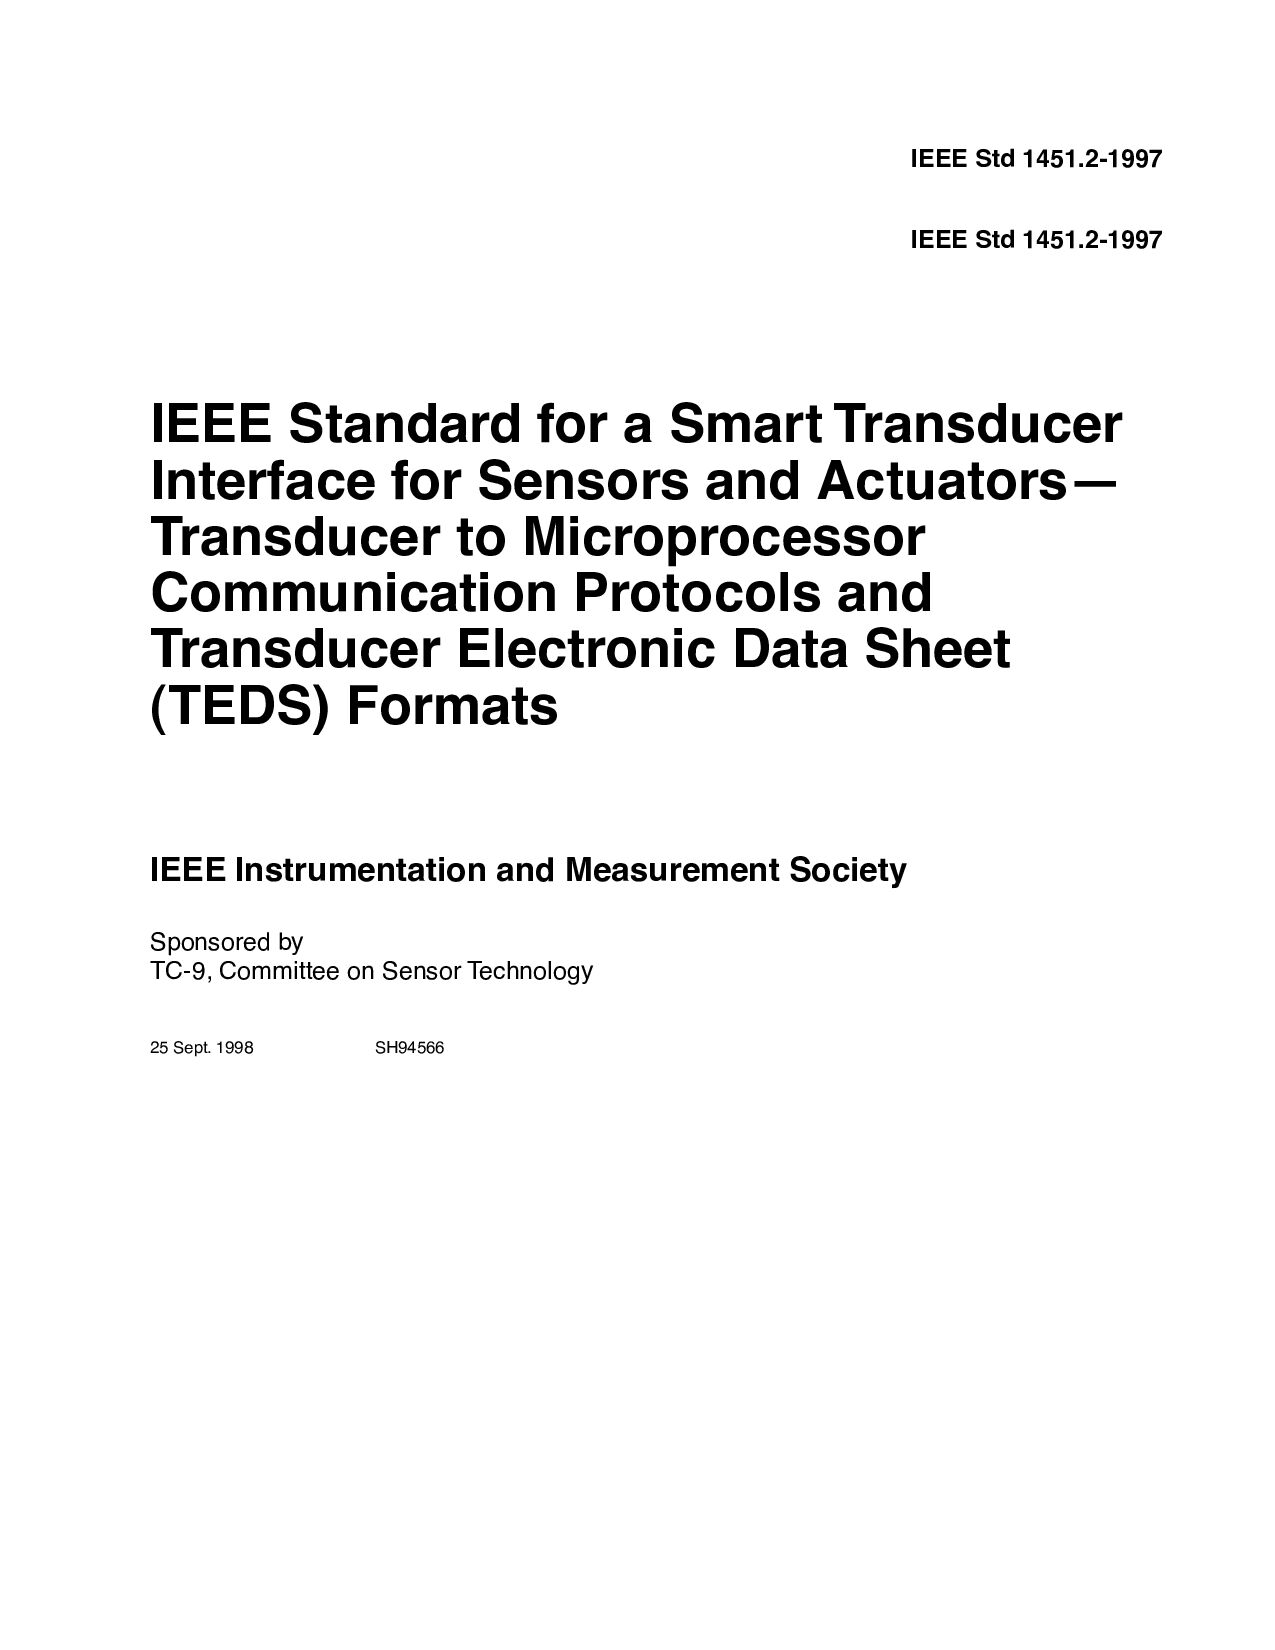 IEEE 1451.2-1997